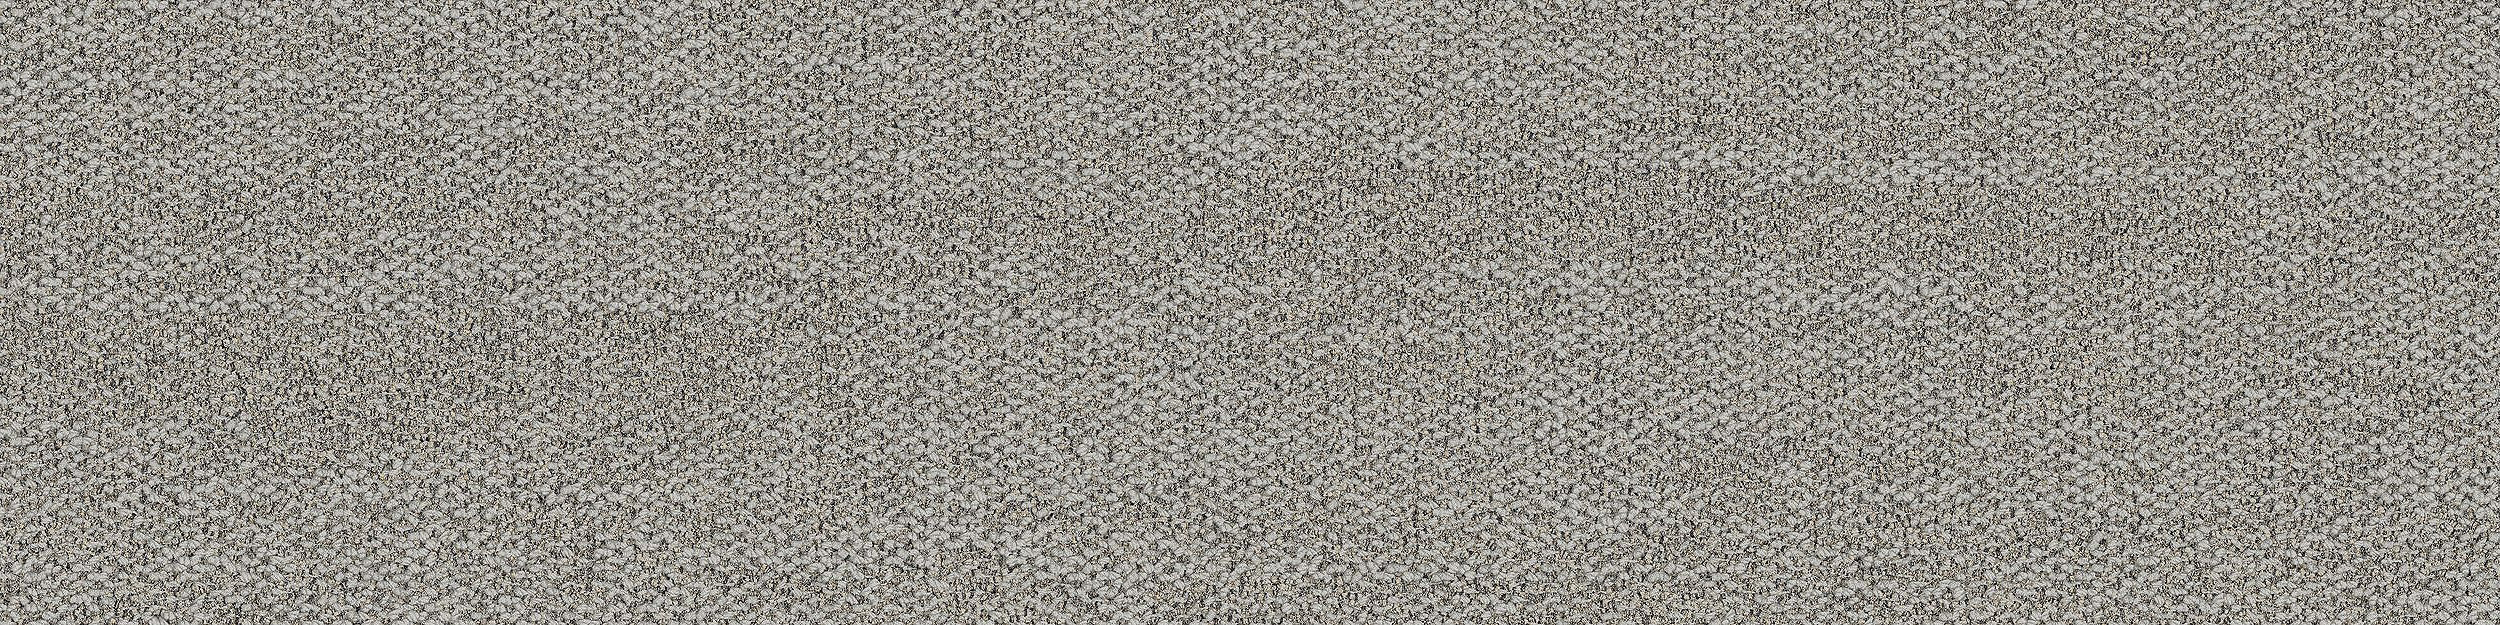 Open Air 402 Carpet Tile In Linen numéro d’image 6